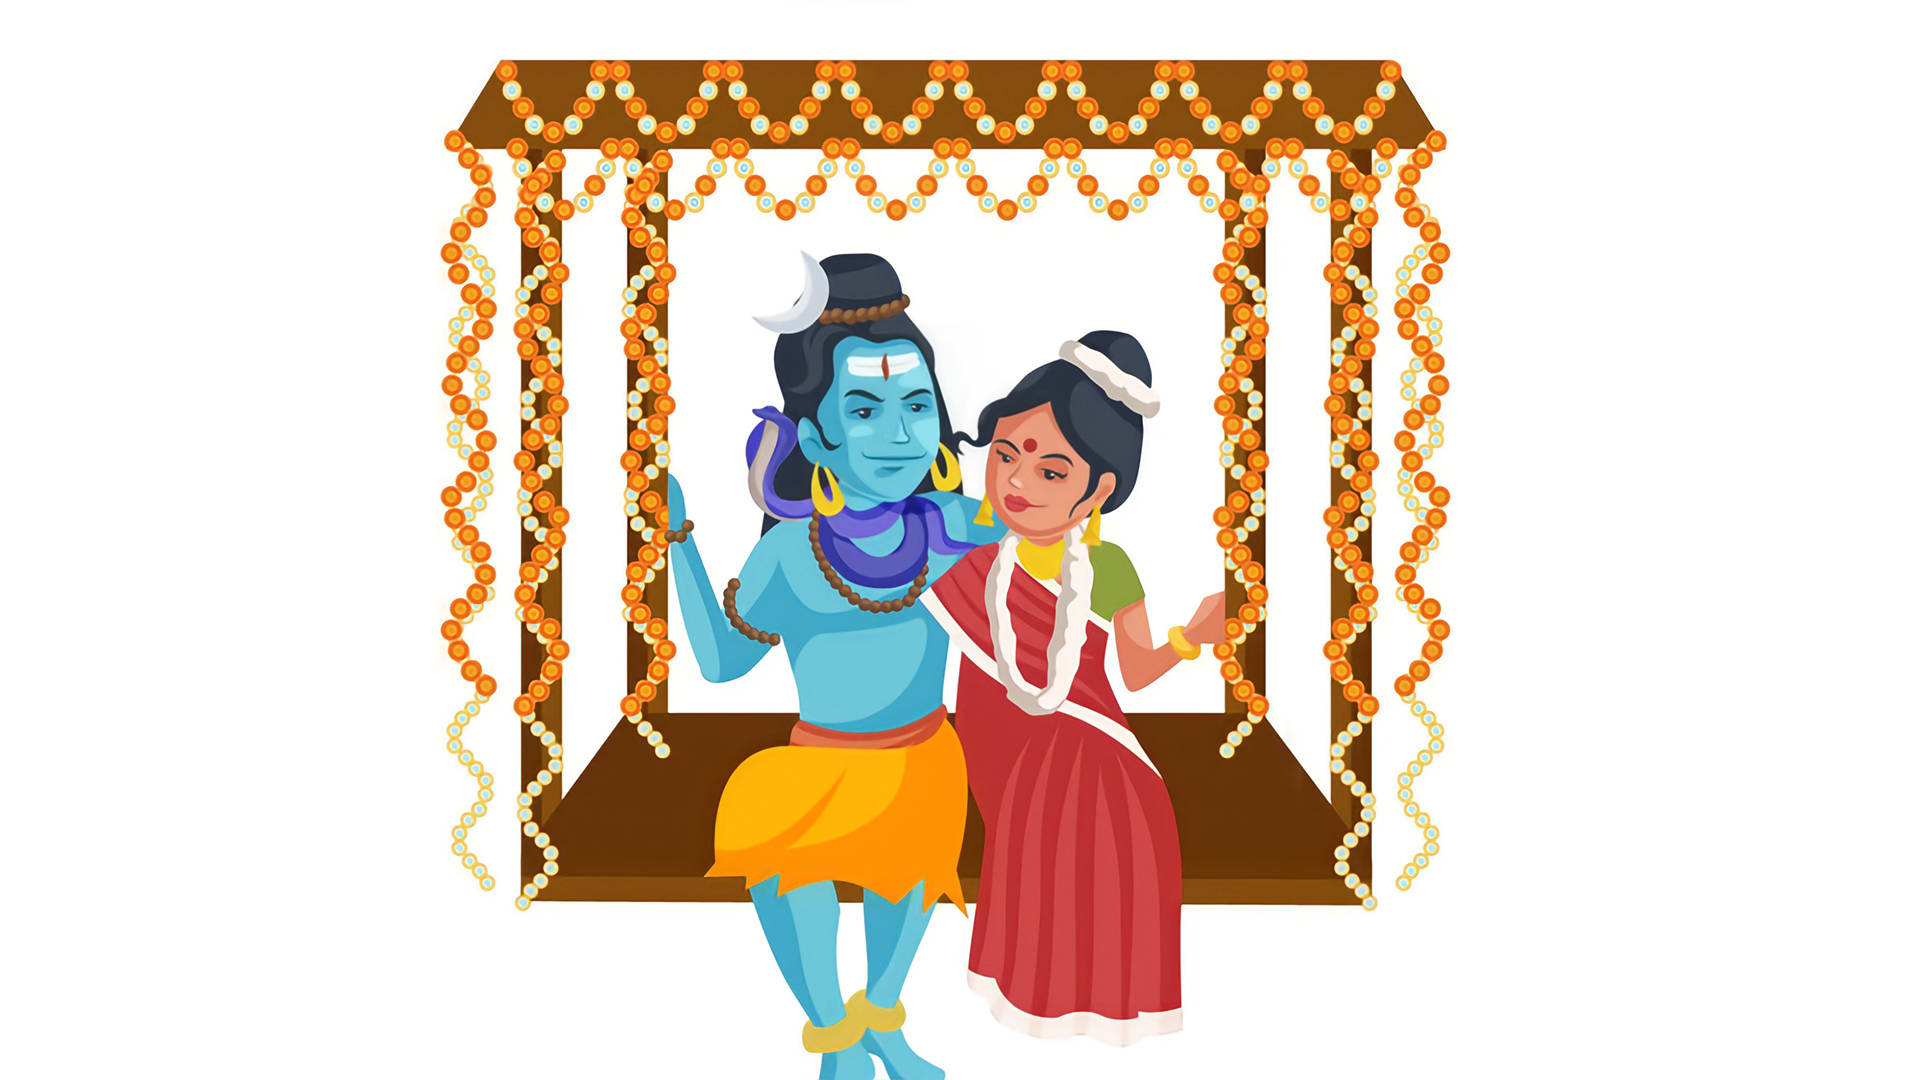 Free Shiv Parvati Hd Wallpaper Downloads, [100+] Shiv Parvati Hd Wallpapers  for FREE 